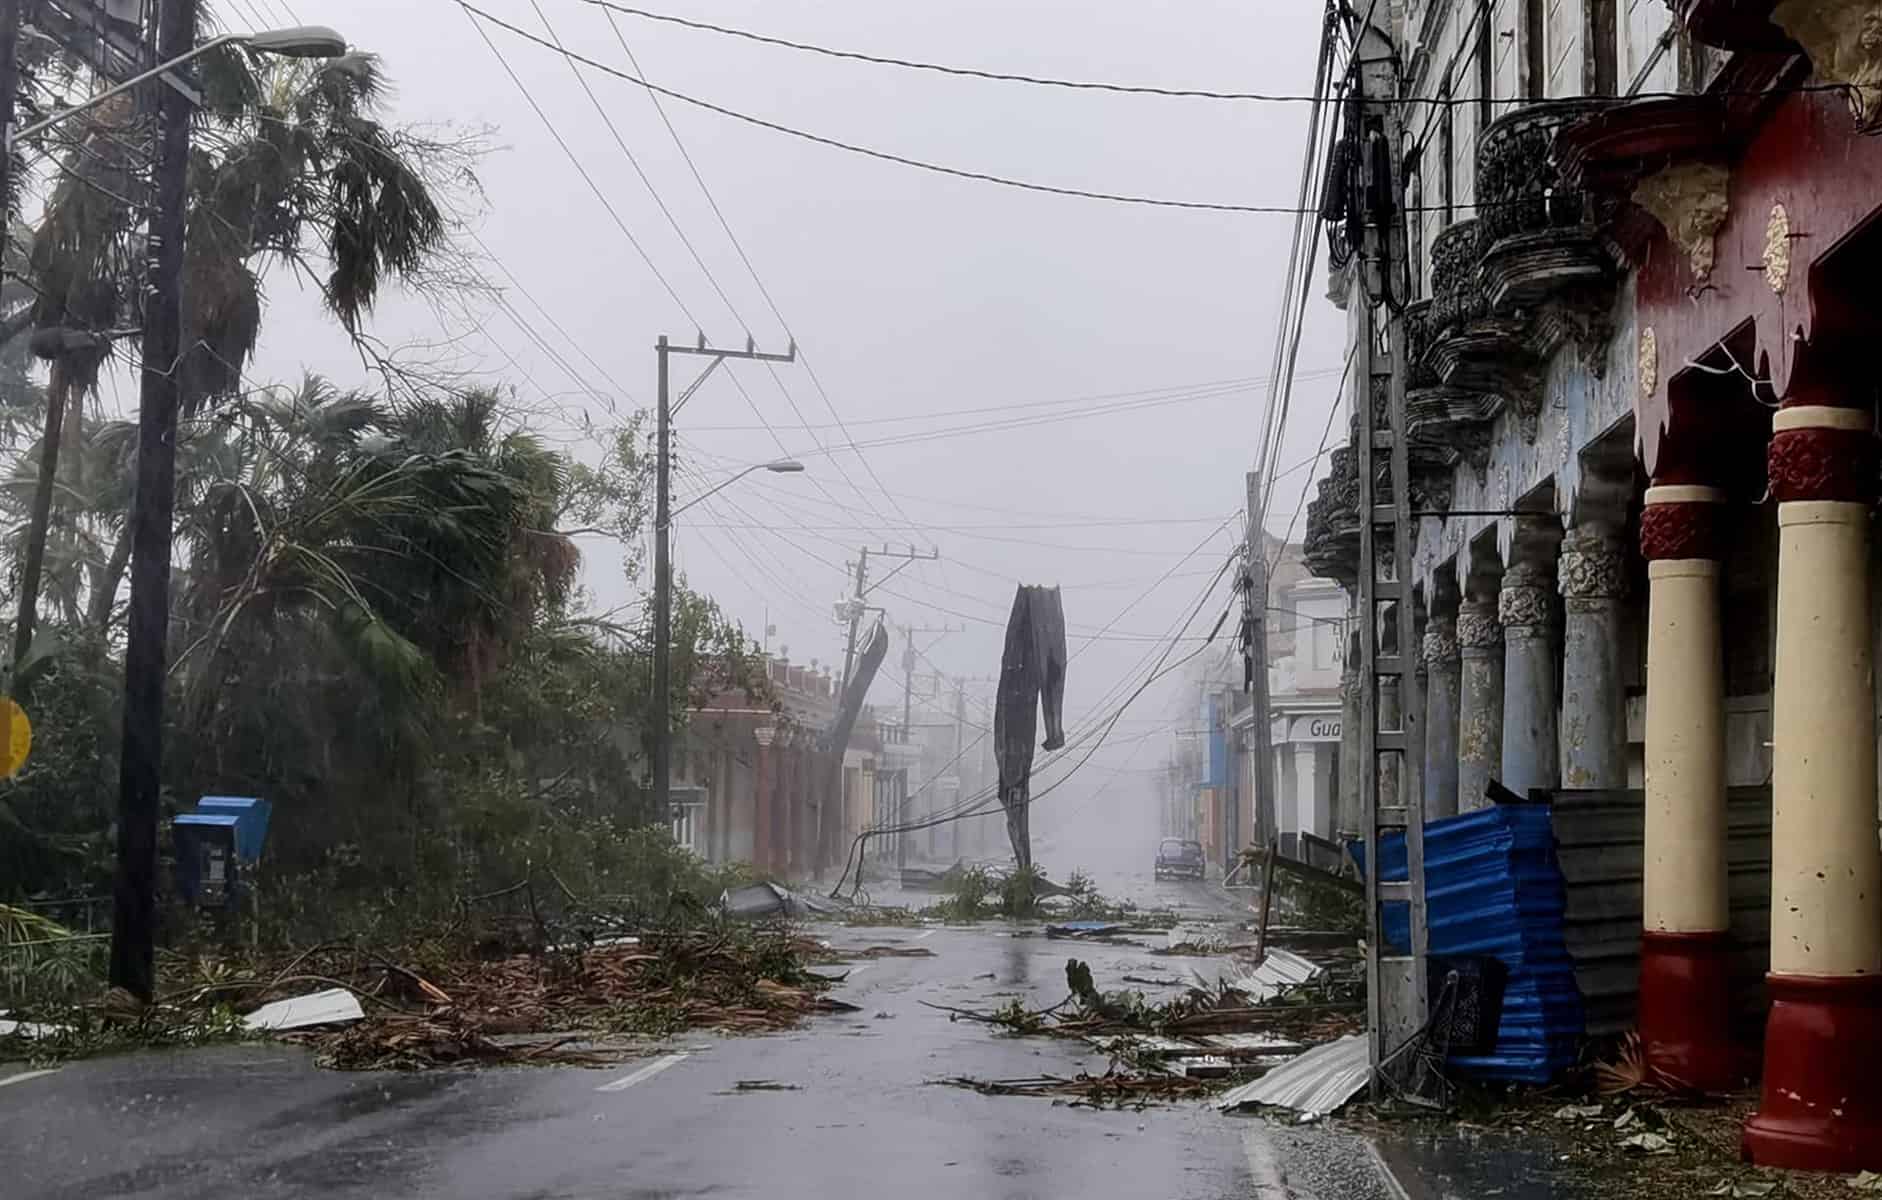 mas paises envian ayudas a cuba tras el huracan ian